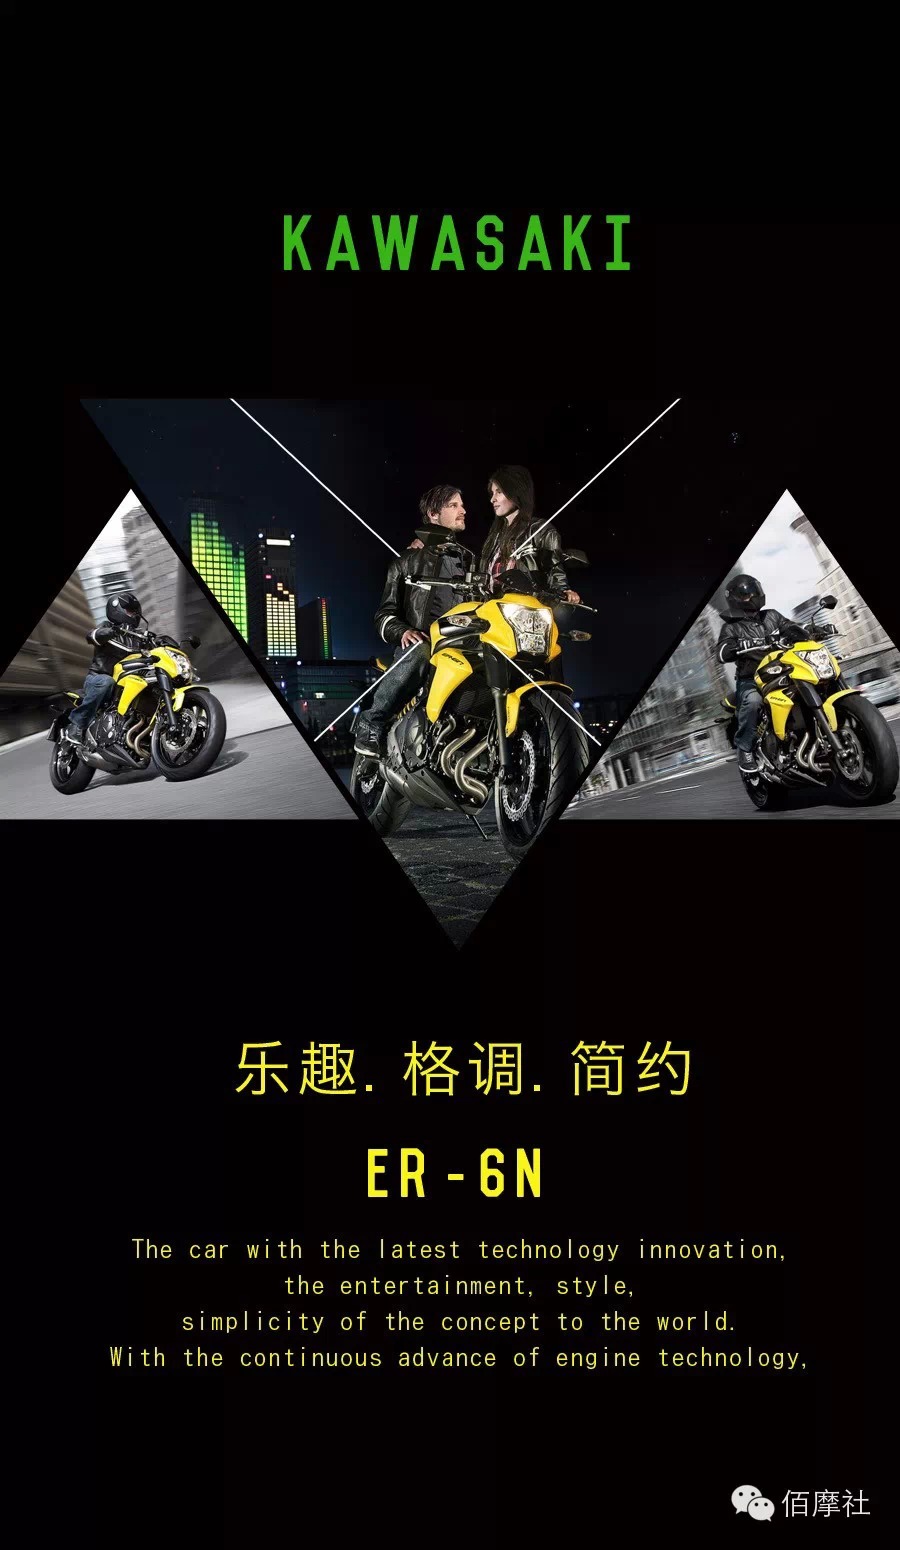 极具诱惑力的川崎ER-6N摩托车，将乐趣、格调、简约的理念推向世界。